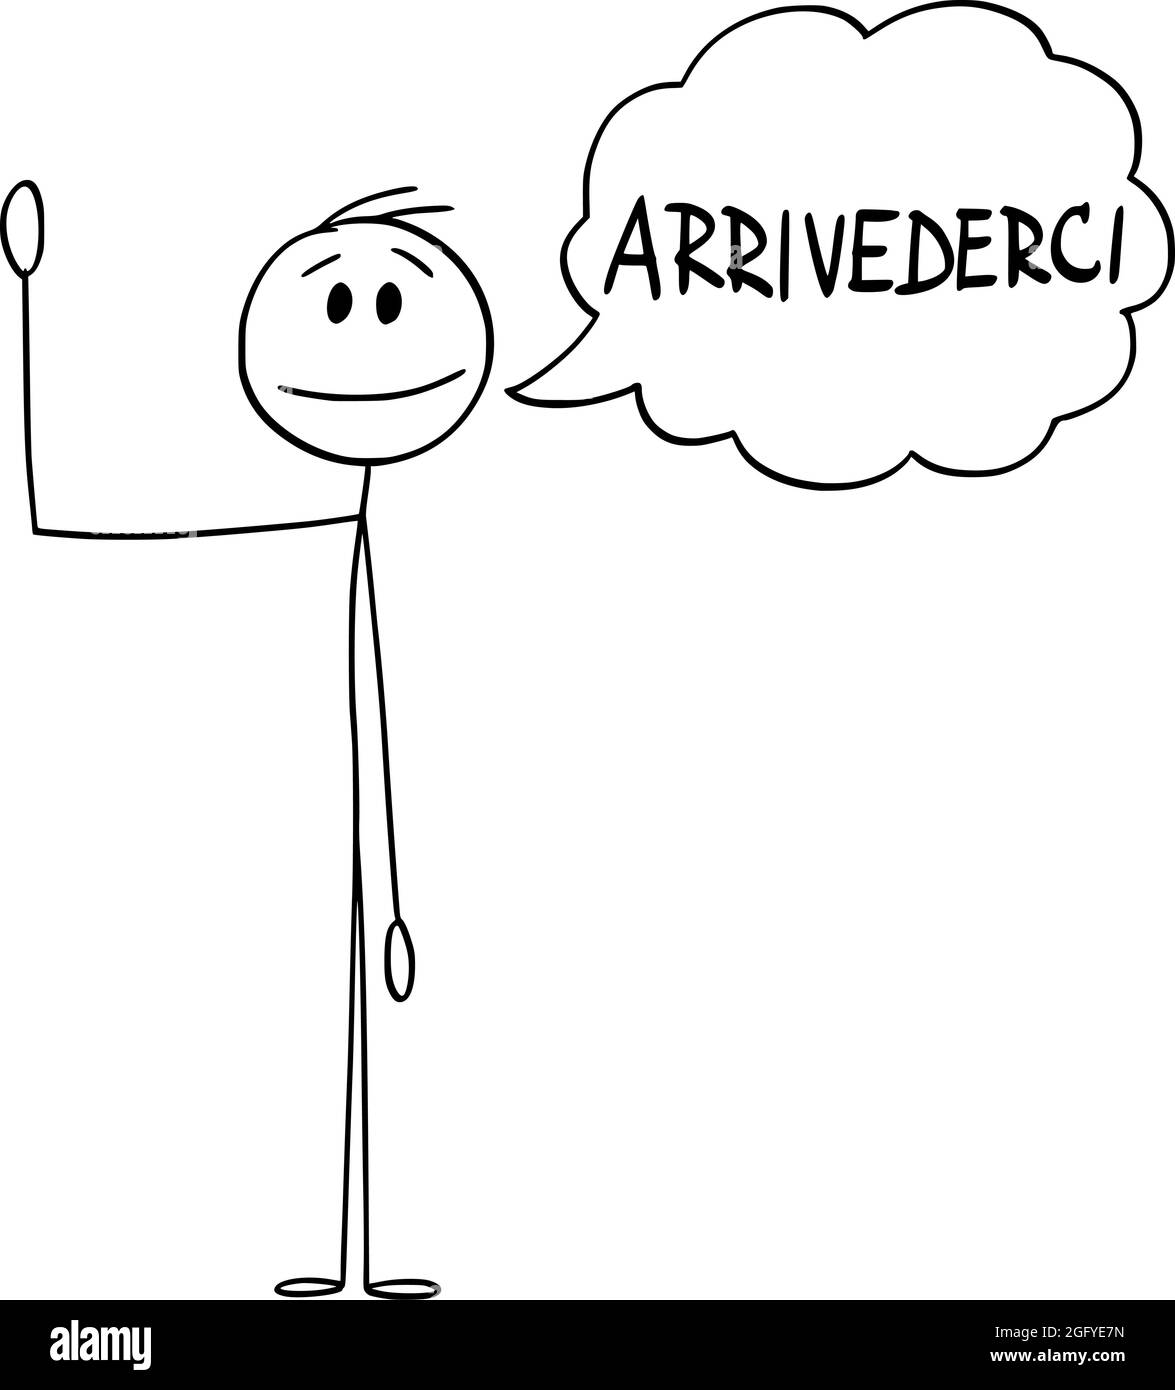 Person oder Mann winkt seine Hand und sagt Gruß Arrivederci in Italienisch, Vektor Cartoon Stick Figur Illustration Stock Vektor